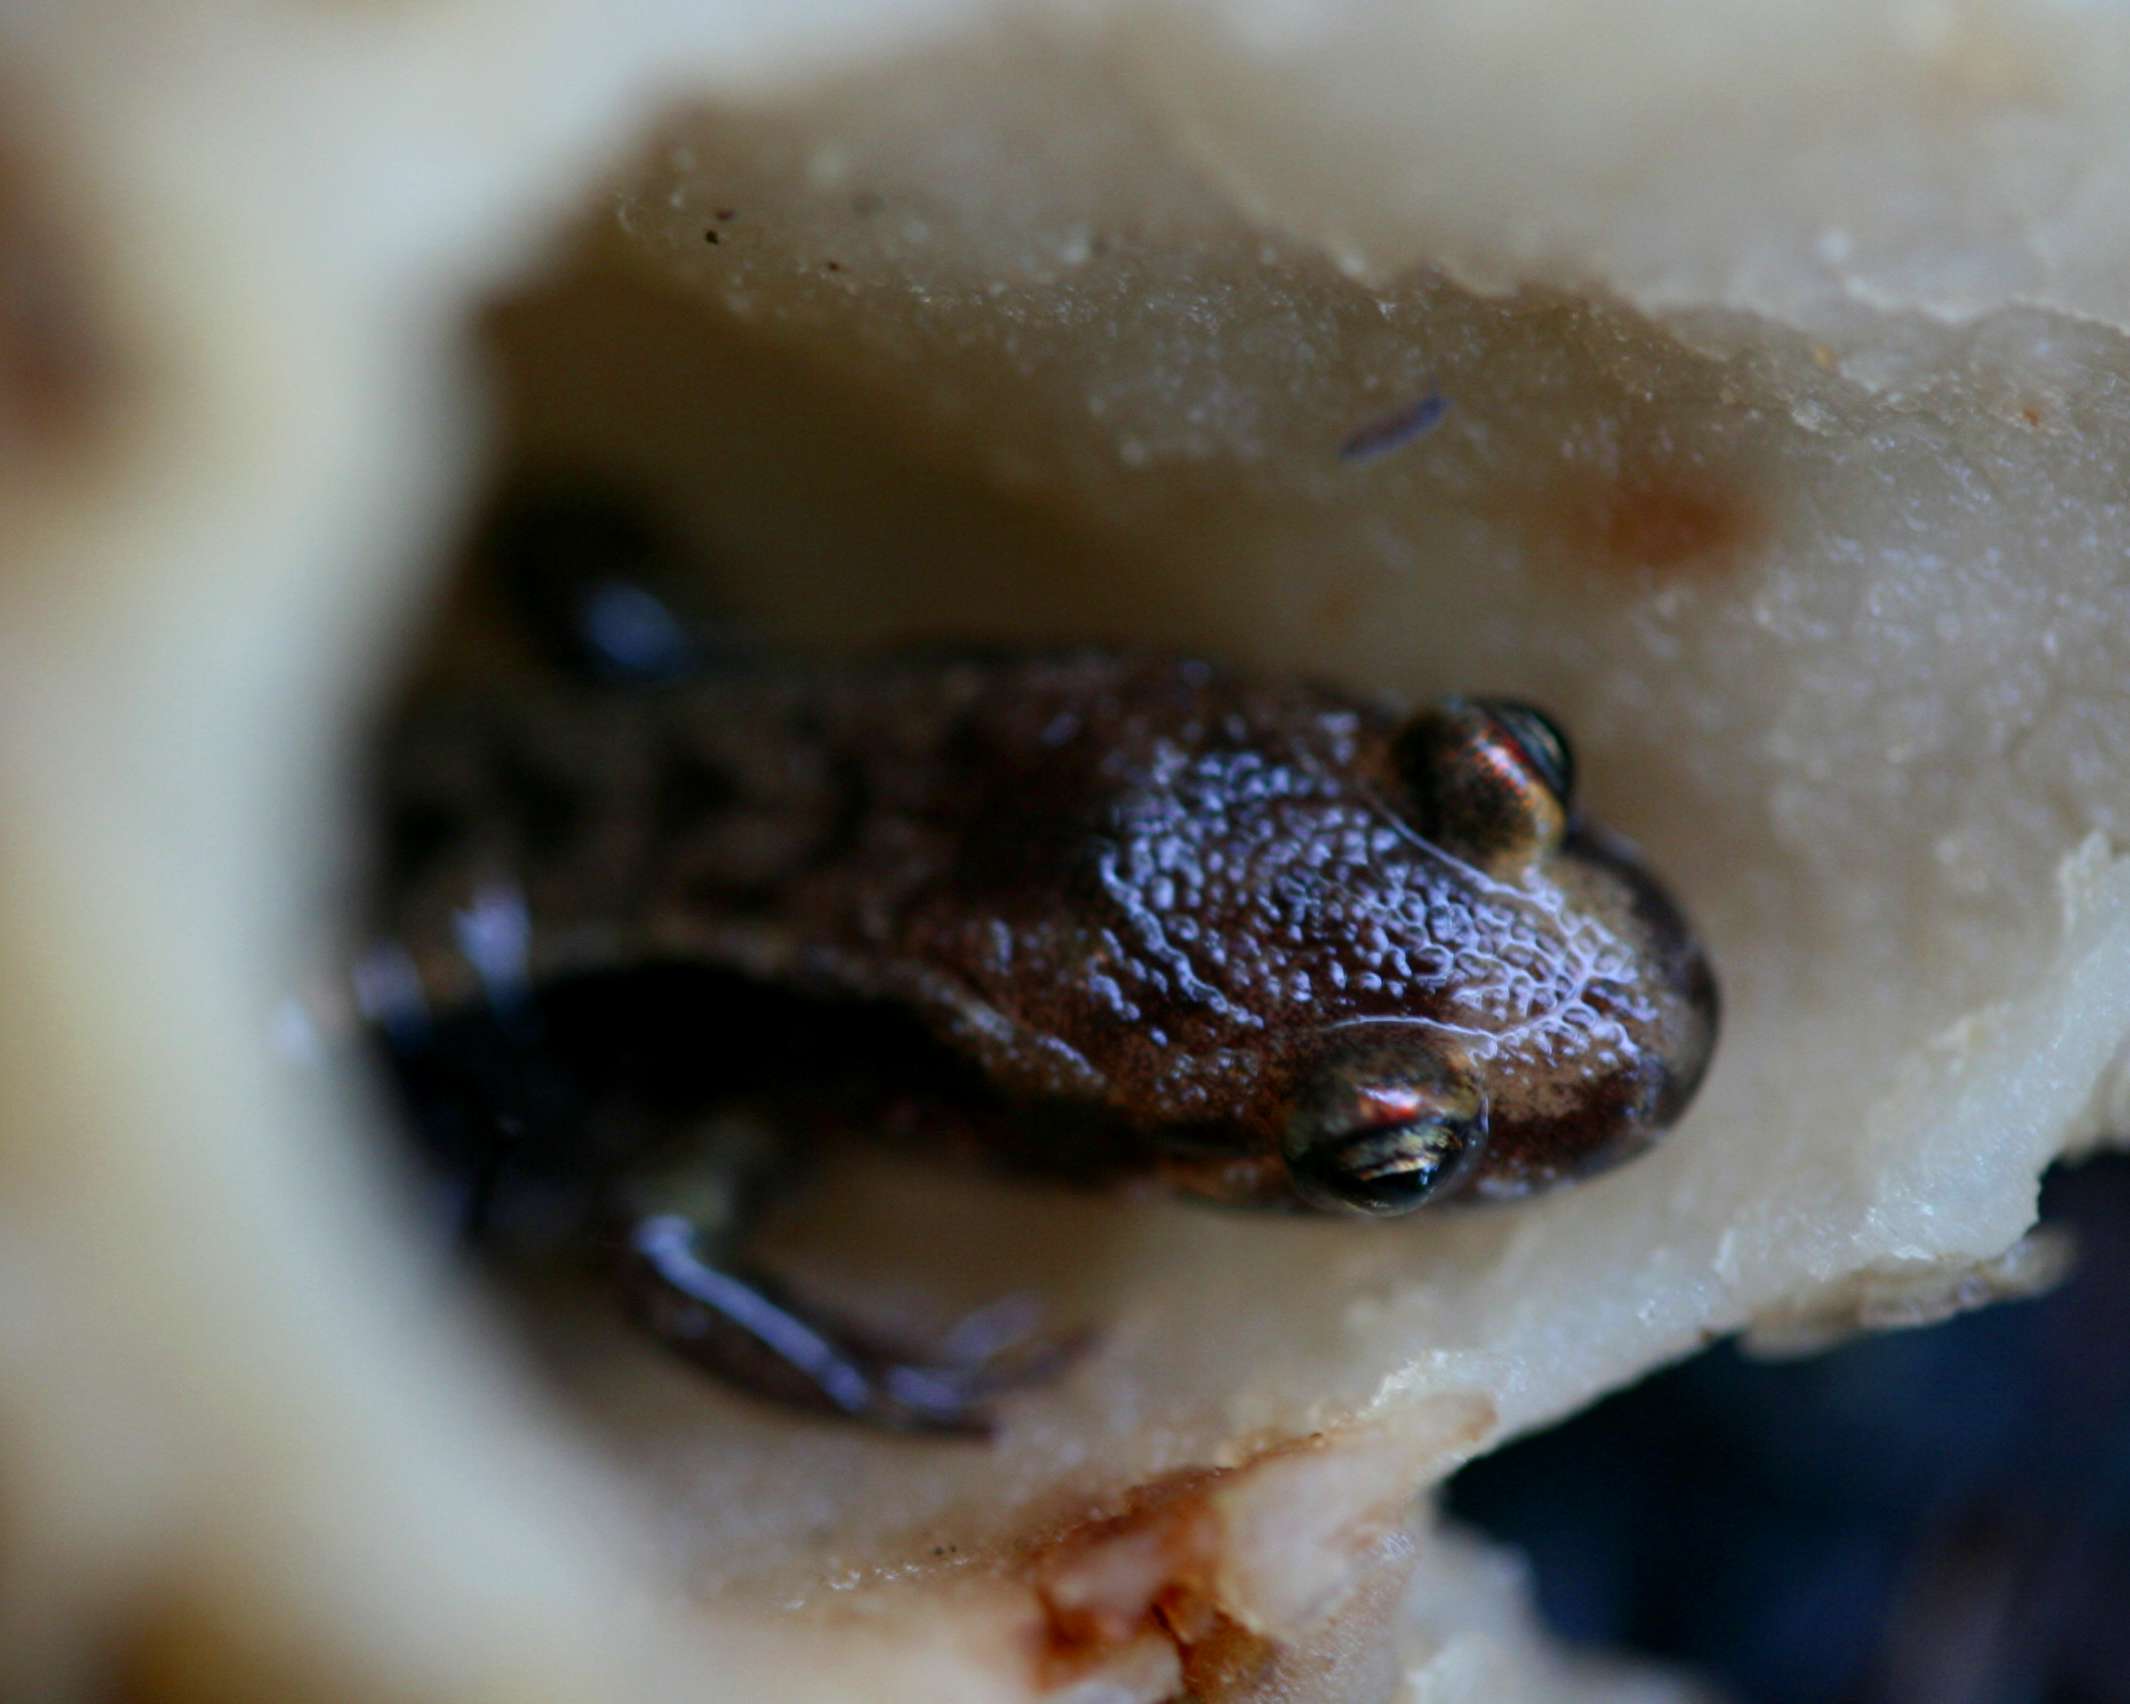 Brown Salamander in Old Hollow Morel Mushroom tb0611irr.jpg